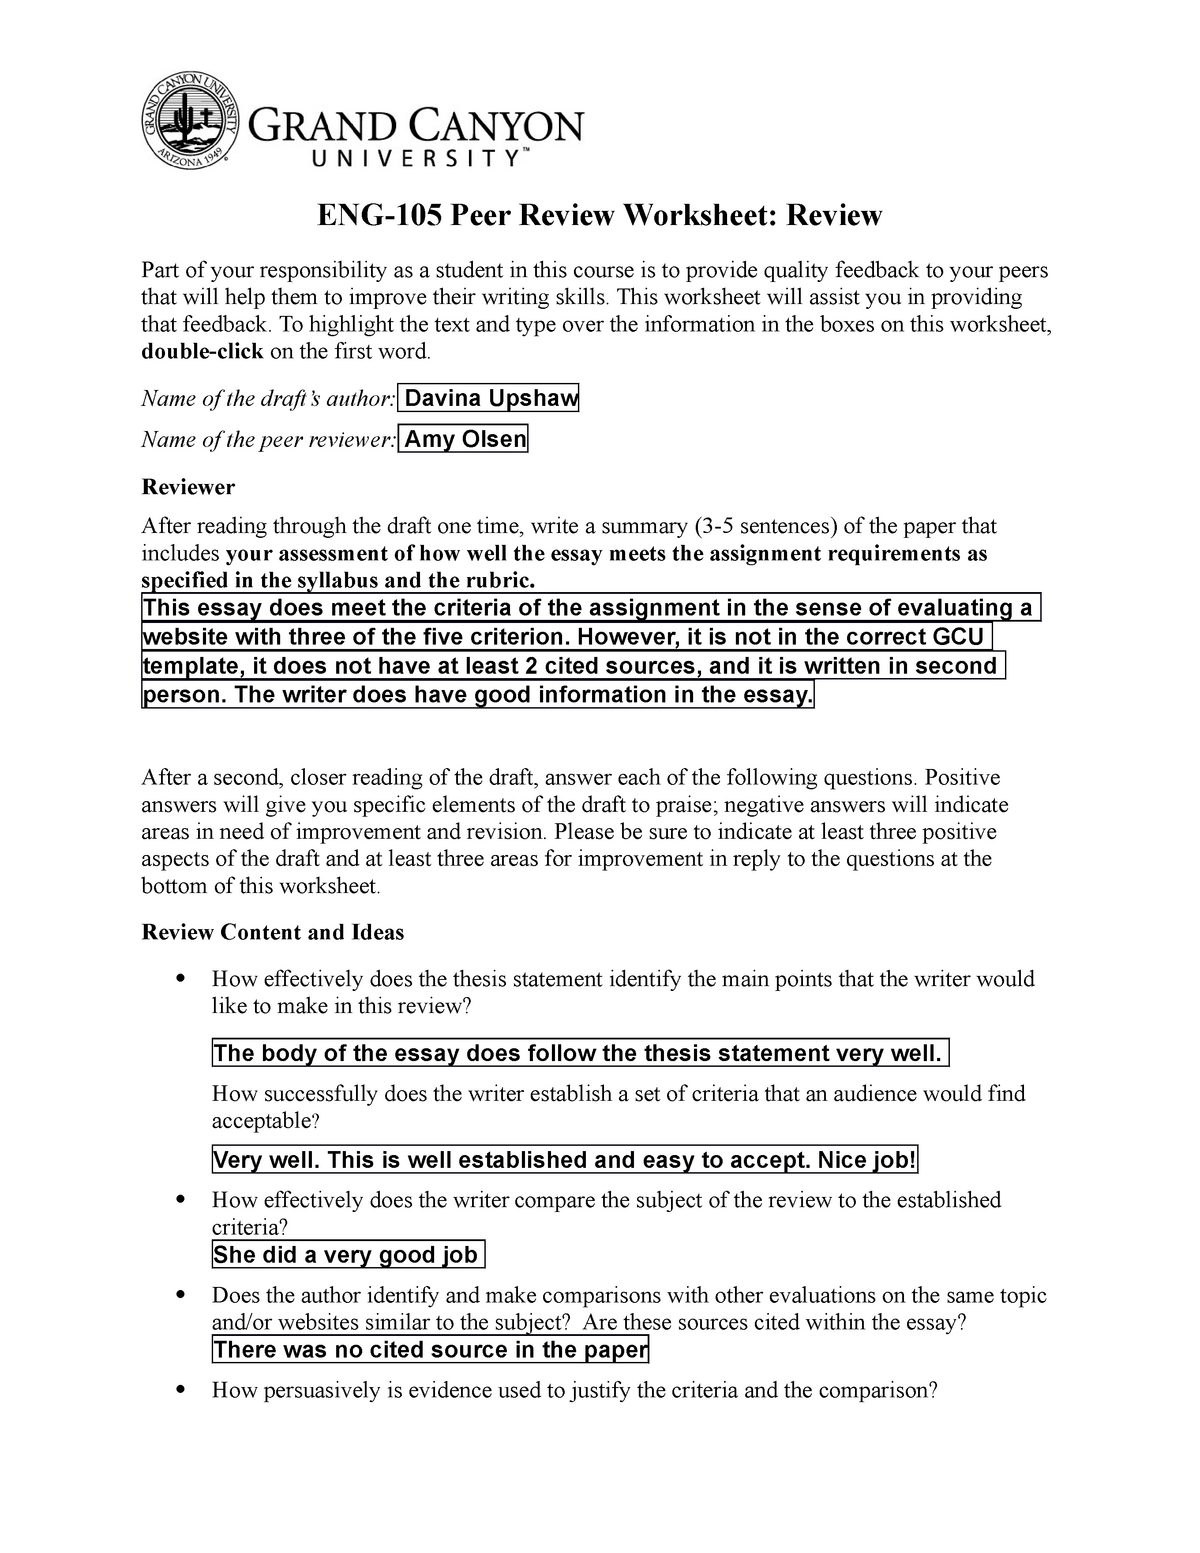 Peer Review Worksheet Revised peer review 2 - StuDocu